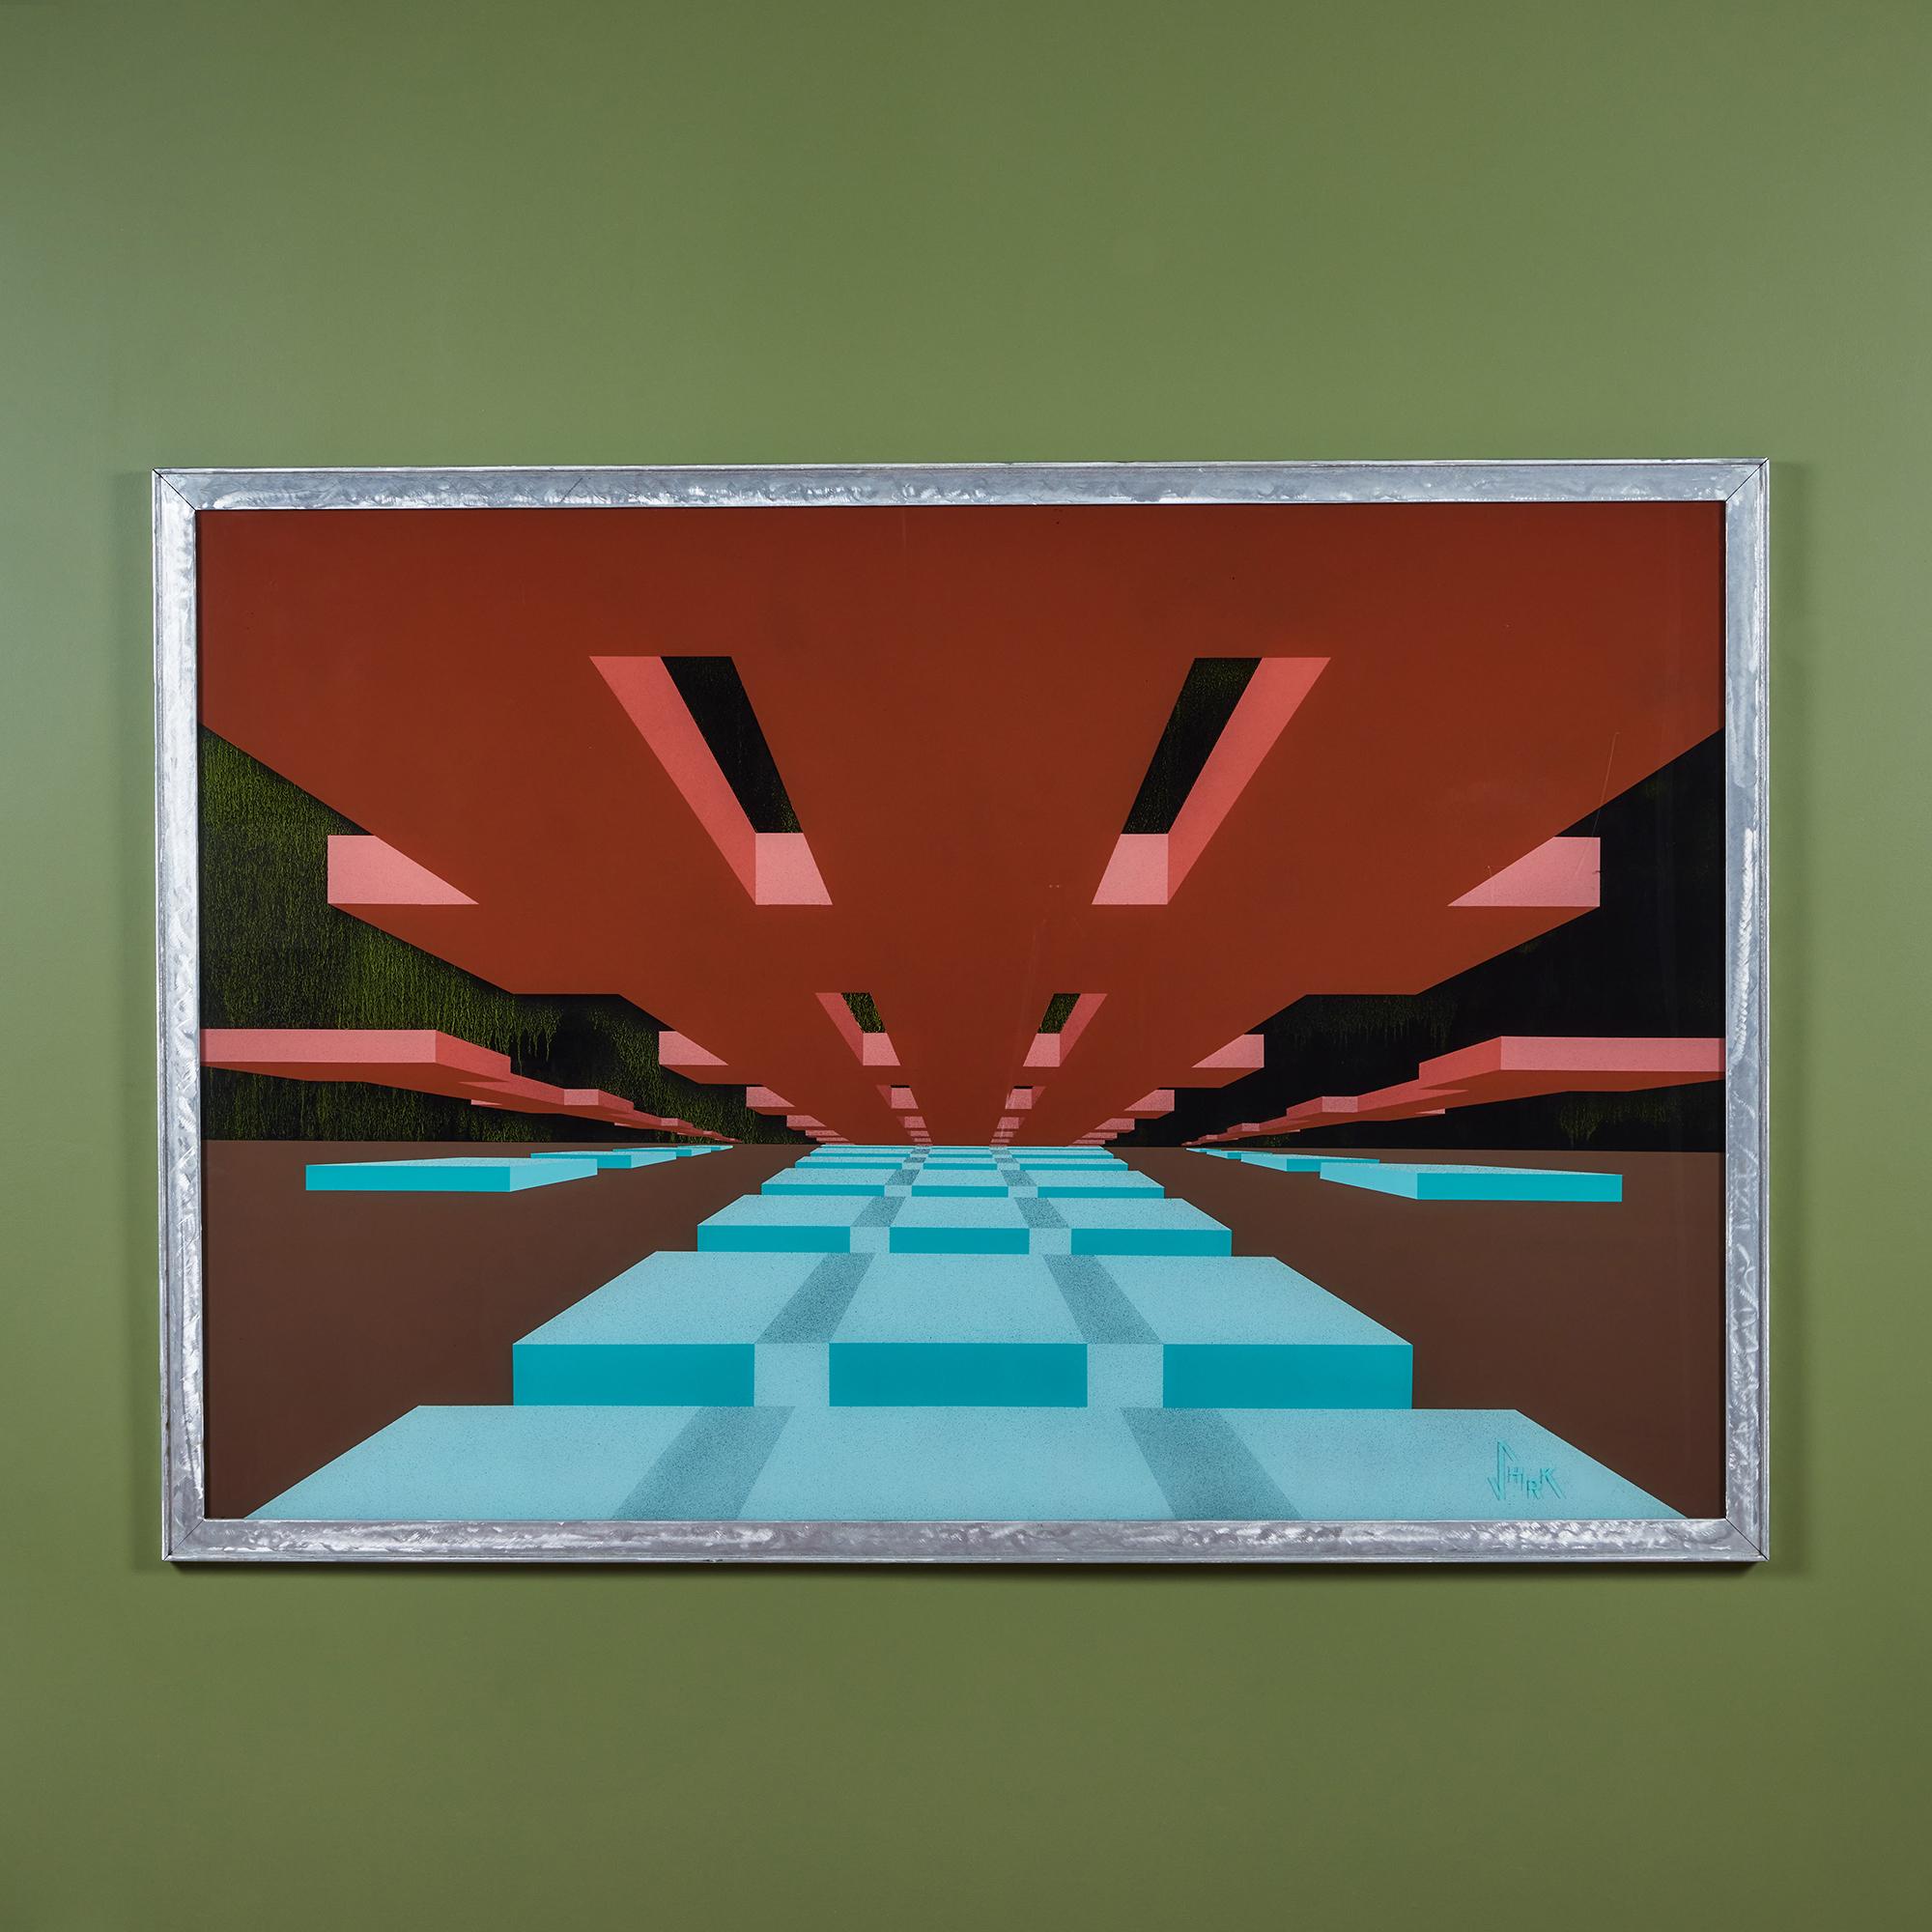 La peinture de l'artiste américain Robert Shirk capture des illusions ludiques en peignant des couches de plexiglas pour donner vie à des images visuellement agréables. Cette œuvre d'art encadrée à grande échelle présente des formes géométriques qui